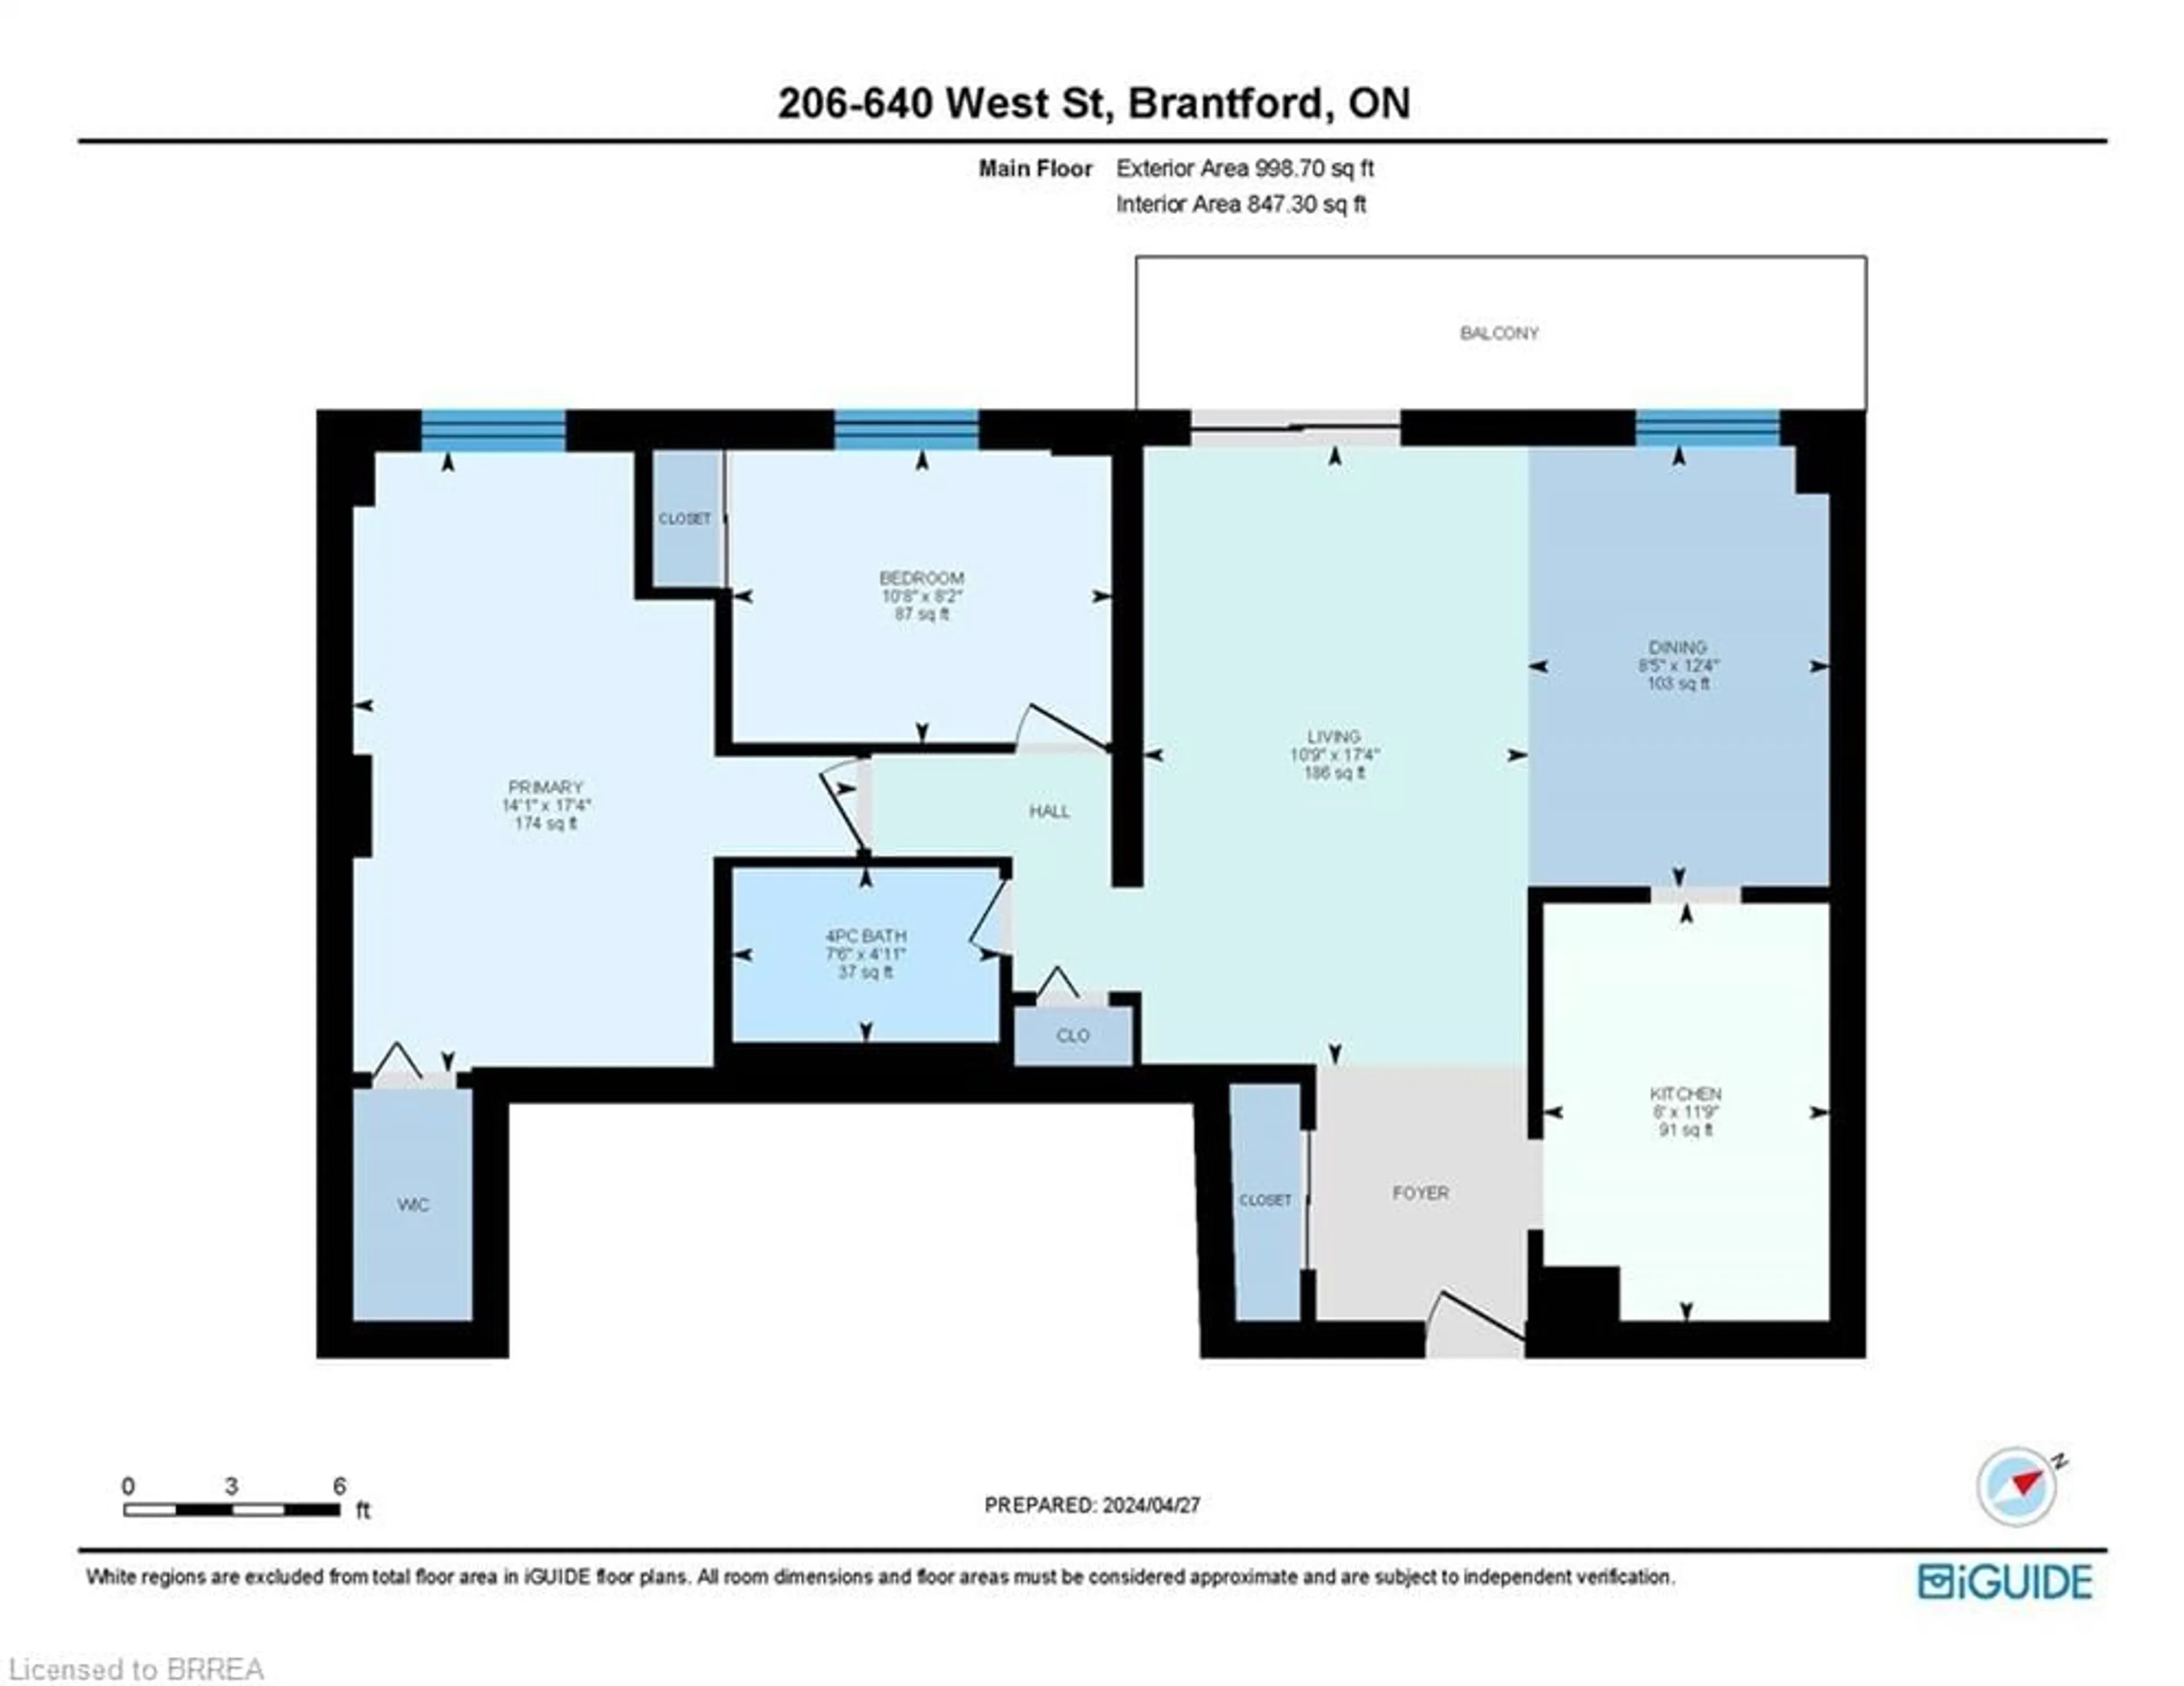 Floor plan for 640 West St #206, Brantford Ontario N3R 6M3